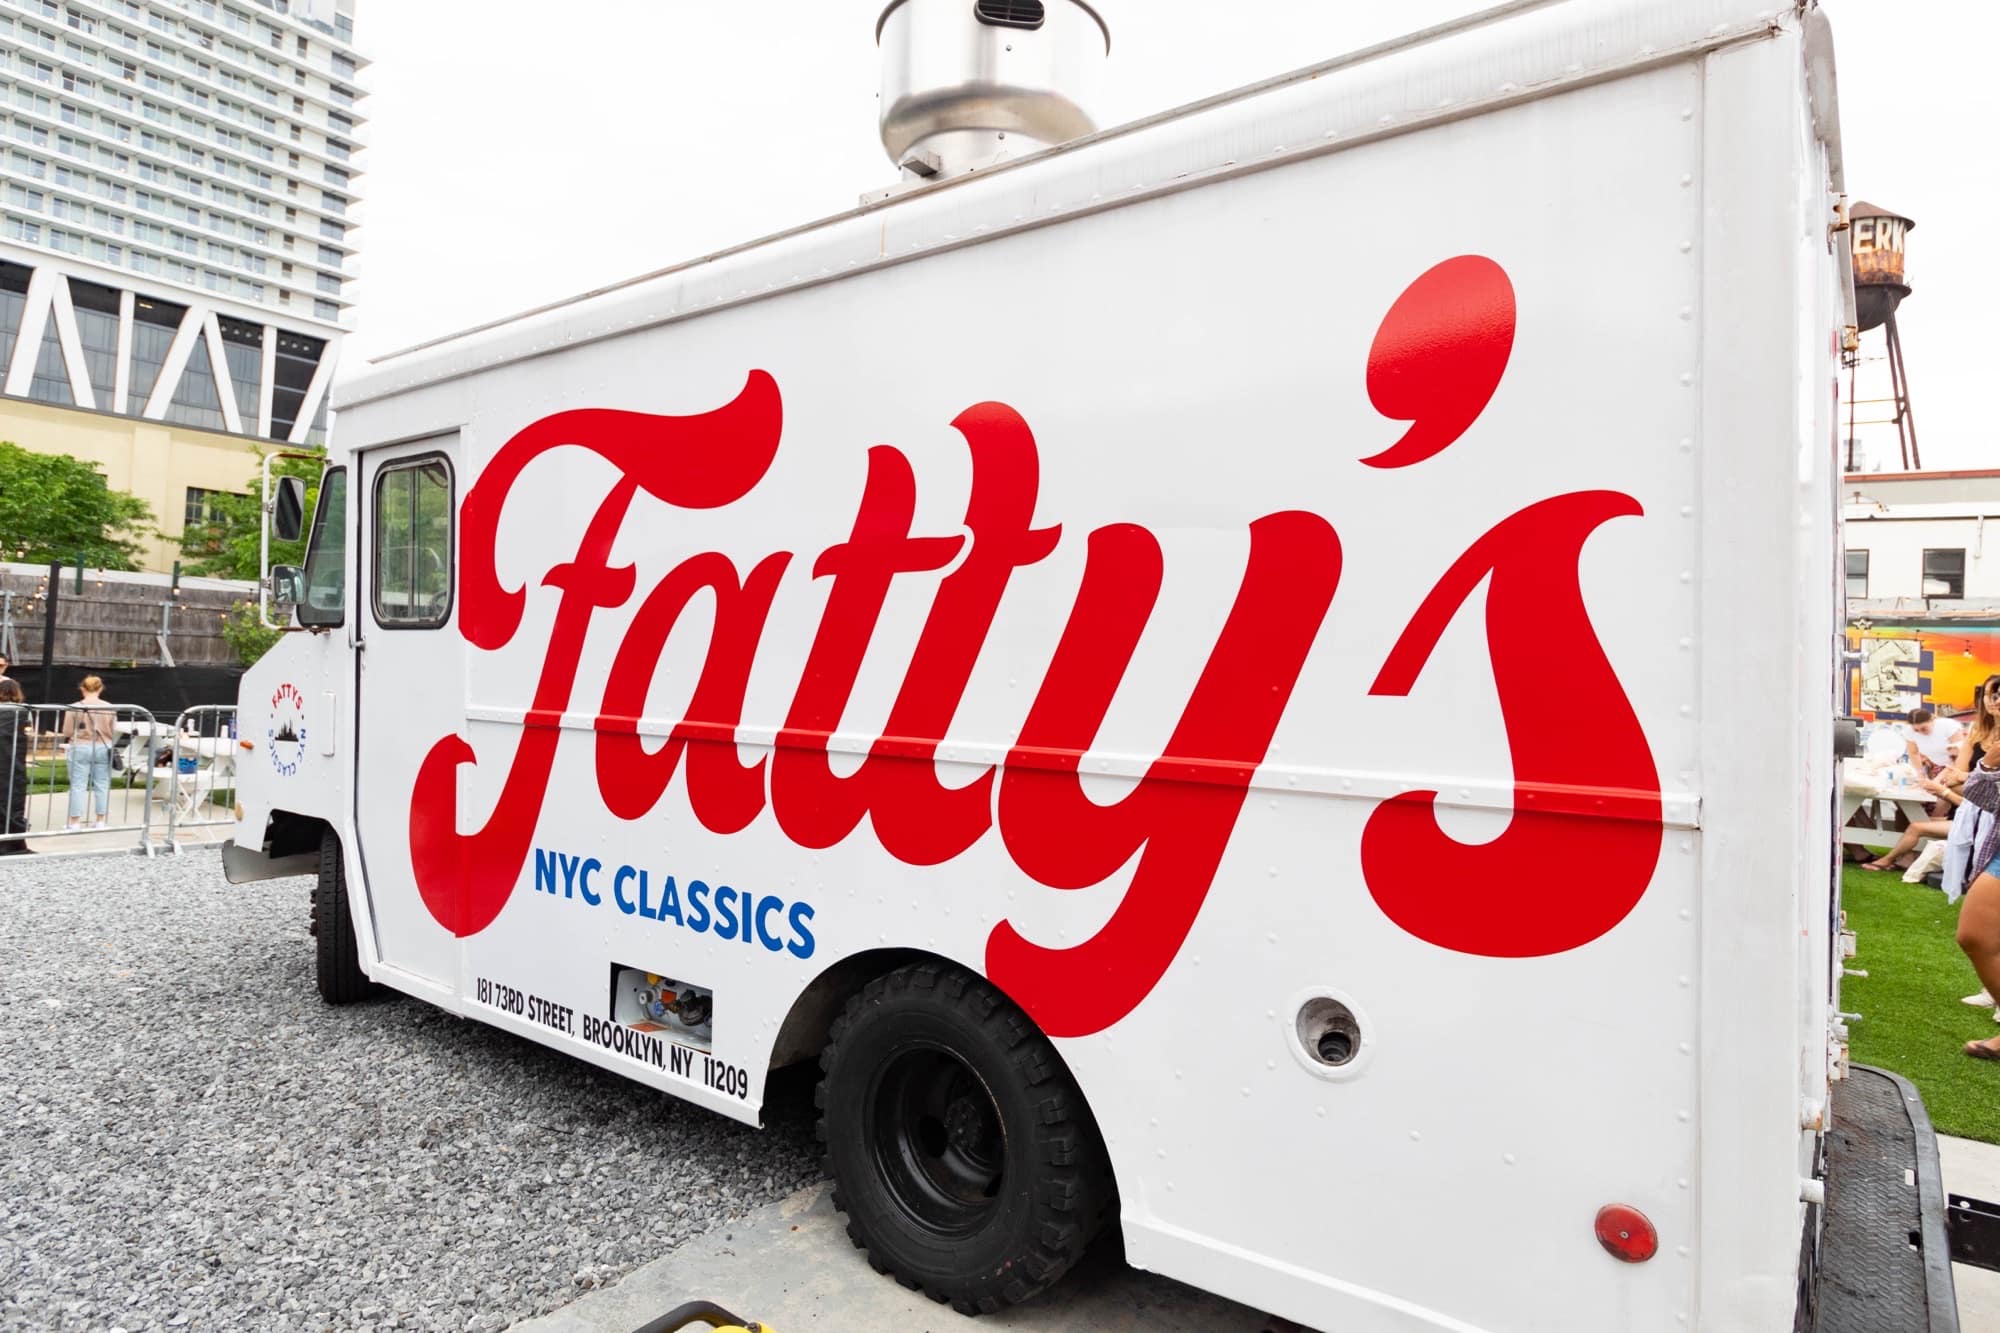 Fatty's NYC Classics food truck